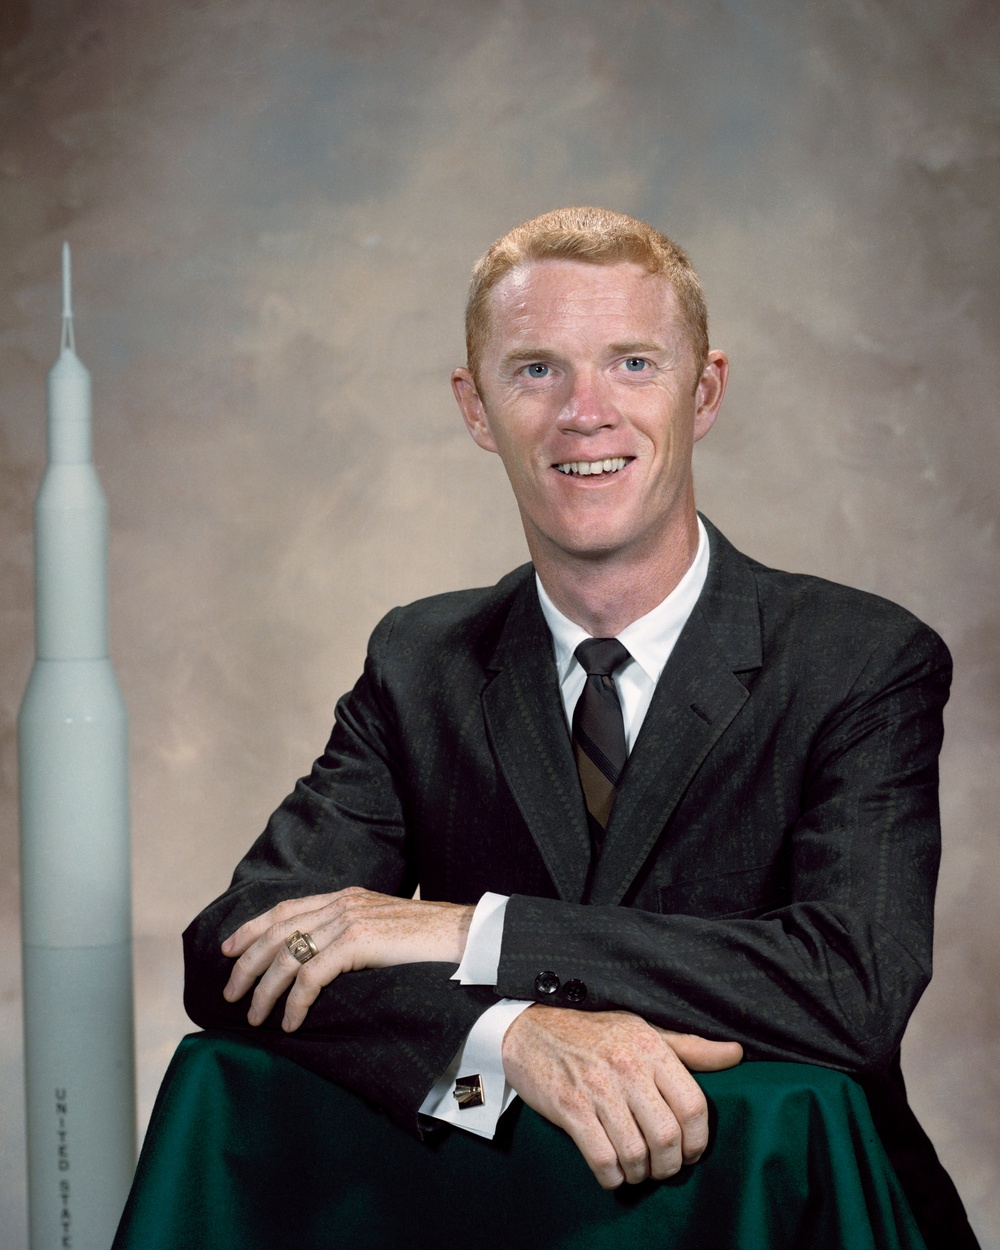 Portrait of Astronaut Russell L. Schweickart Jr.